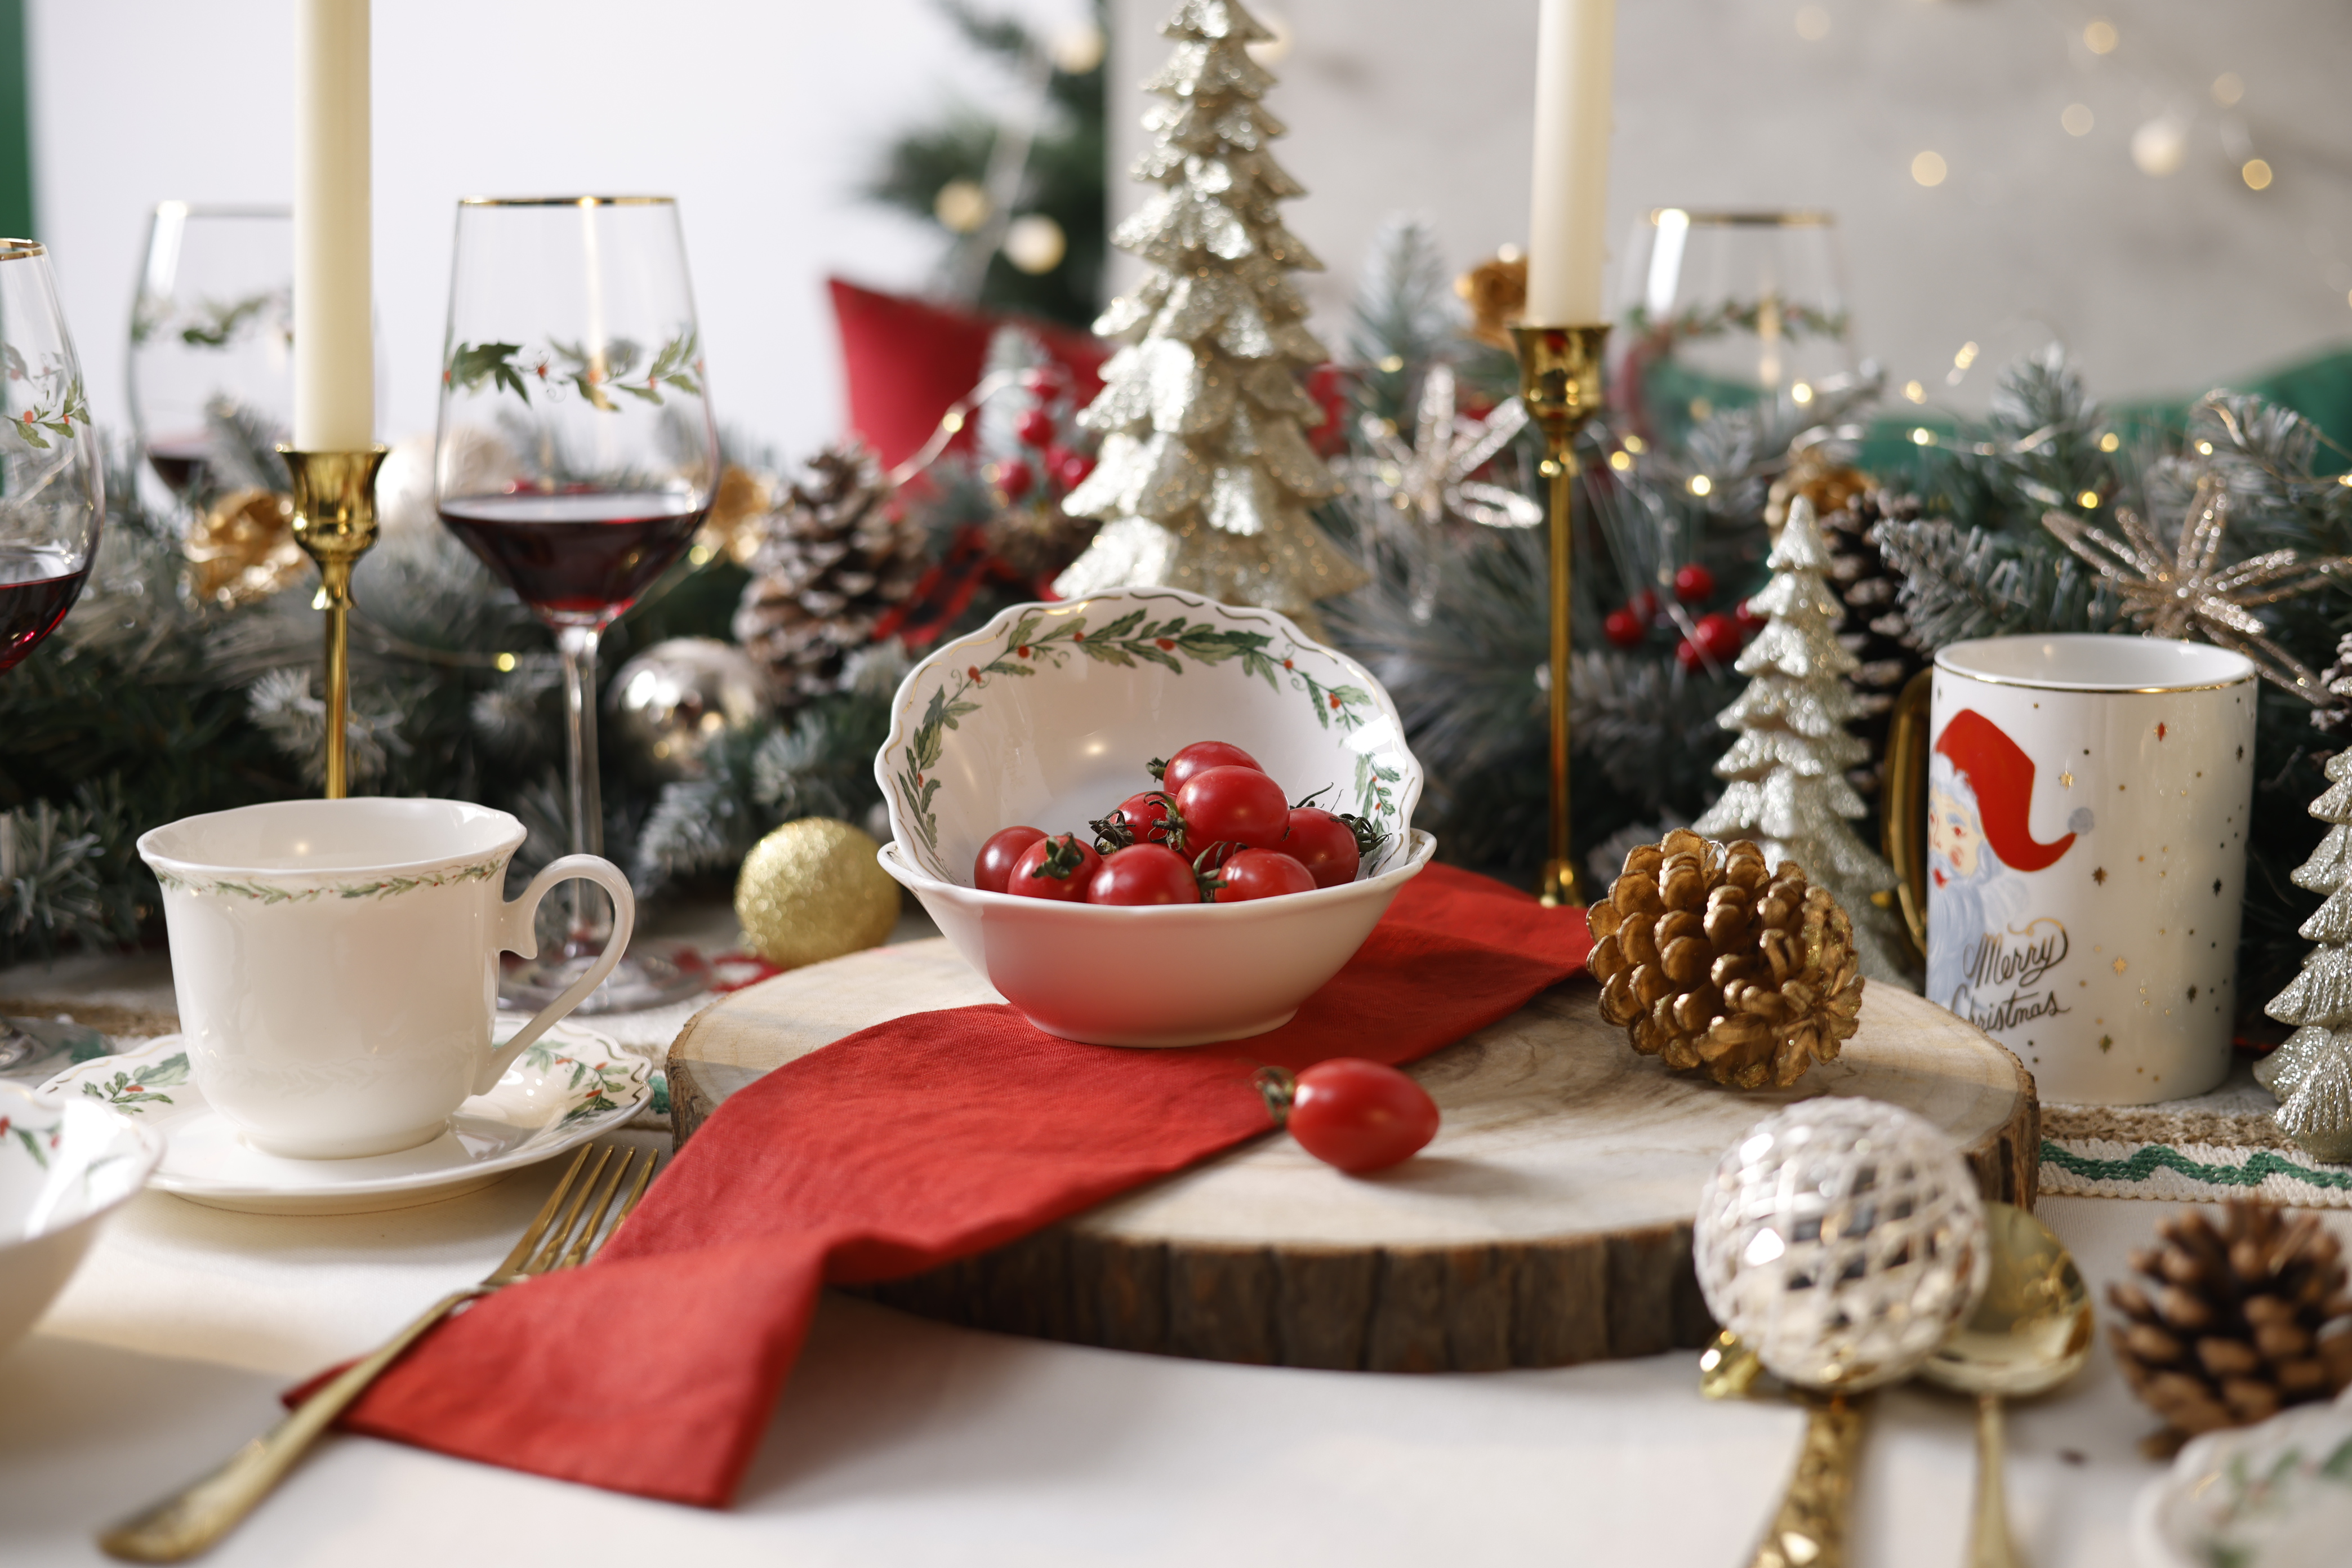 Christmas tableware with metallic Christmas ornaments